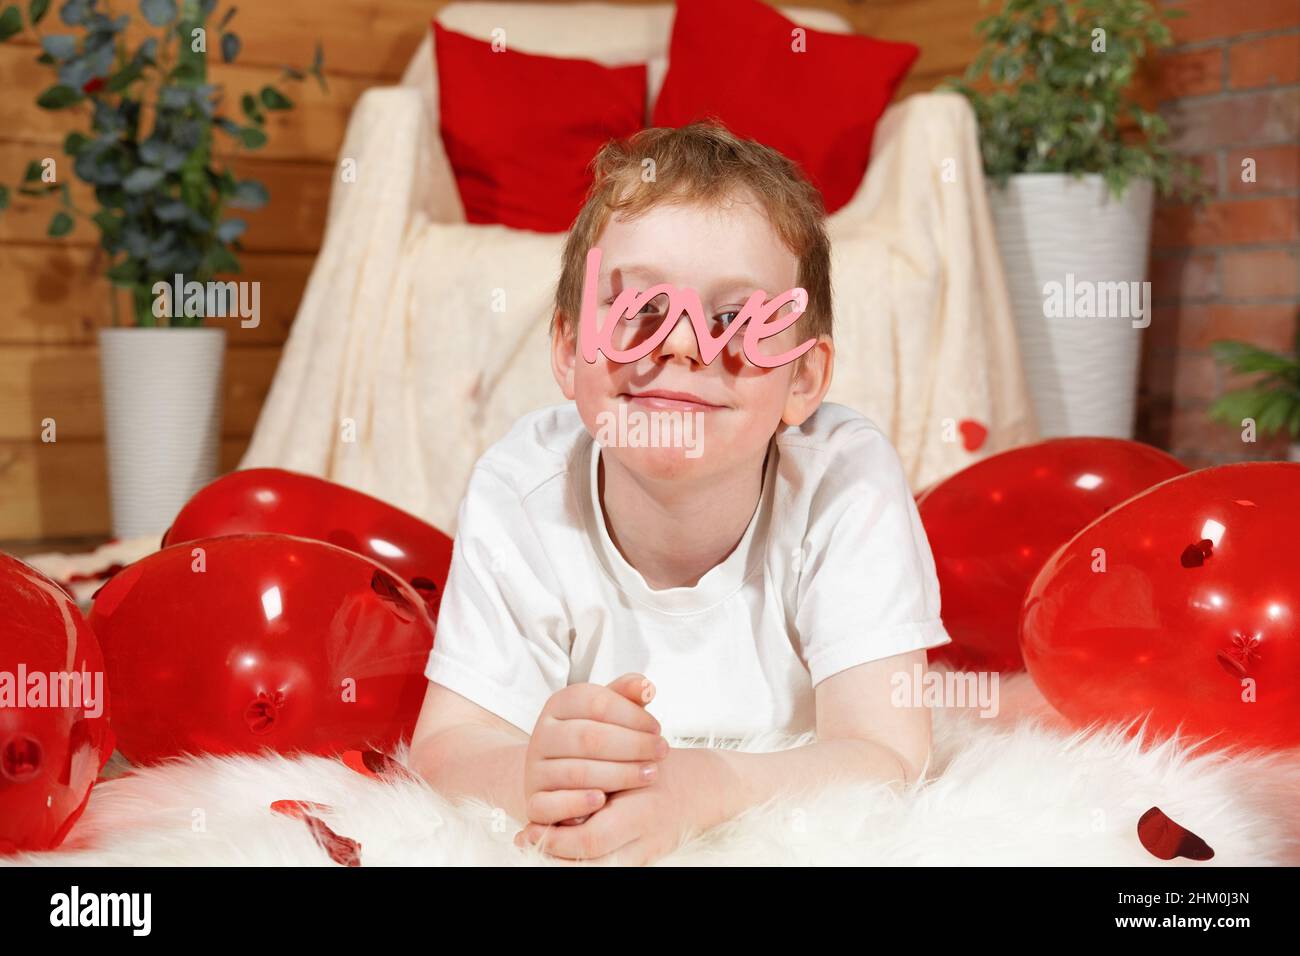 Valentinstag Kinder oder Kinder. Niedlichen fröhlichen kleinen Jungen mit roten Ballons in Form eines Herzens und Text Liebe in Form einer Brille, auf Valentine' Stockfoto